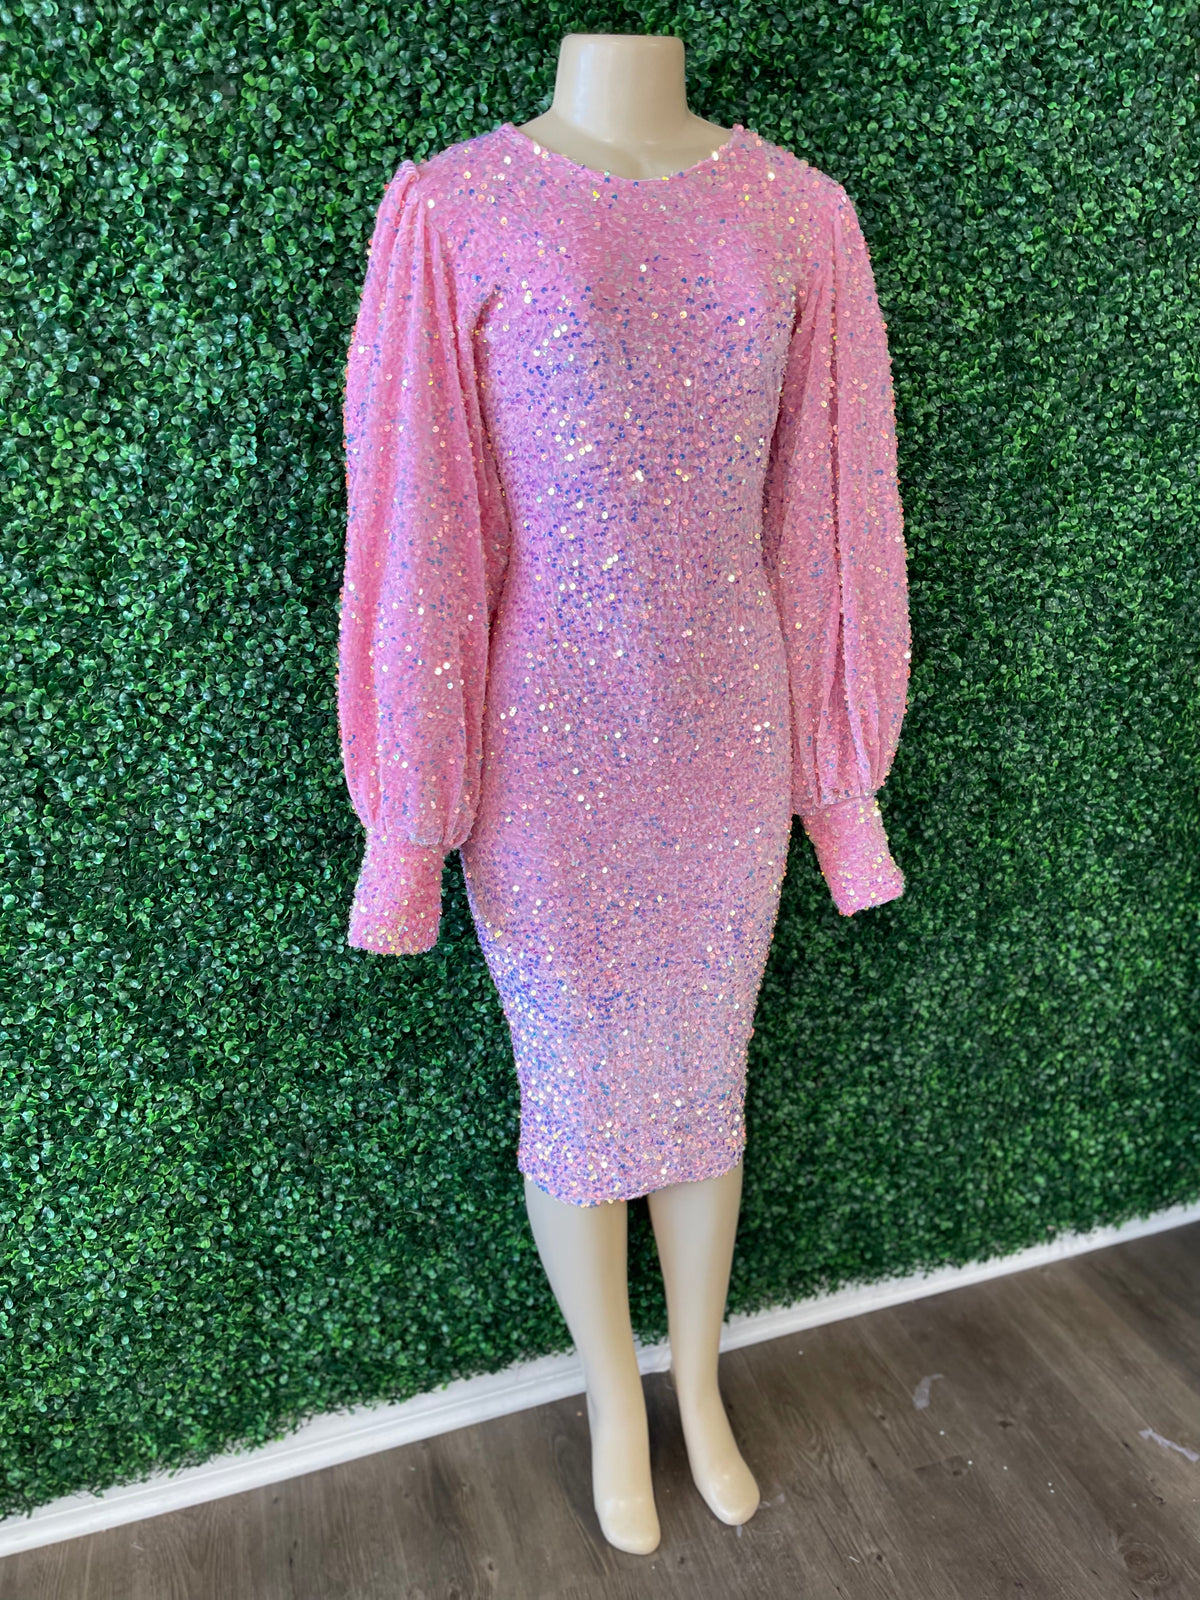 Bubble gum sequin dress